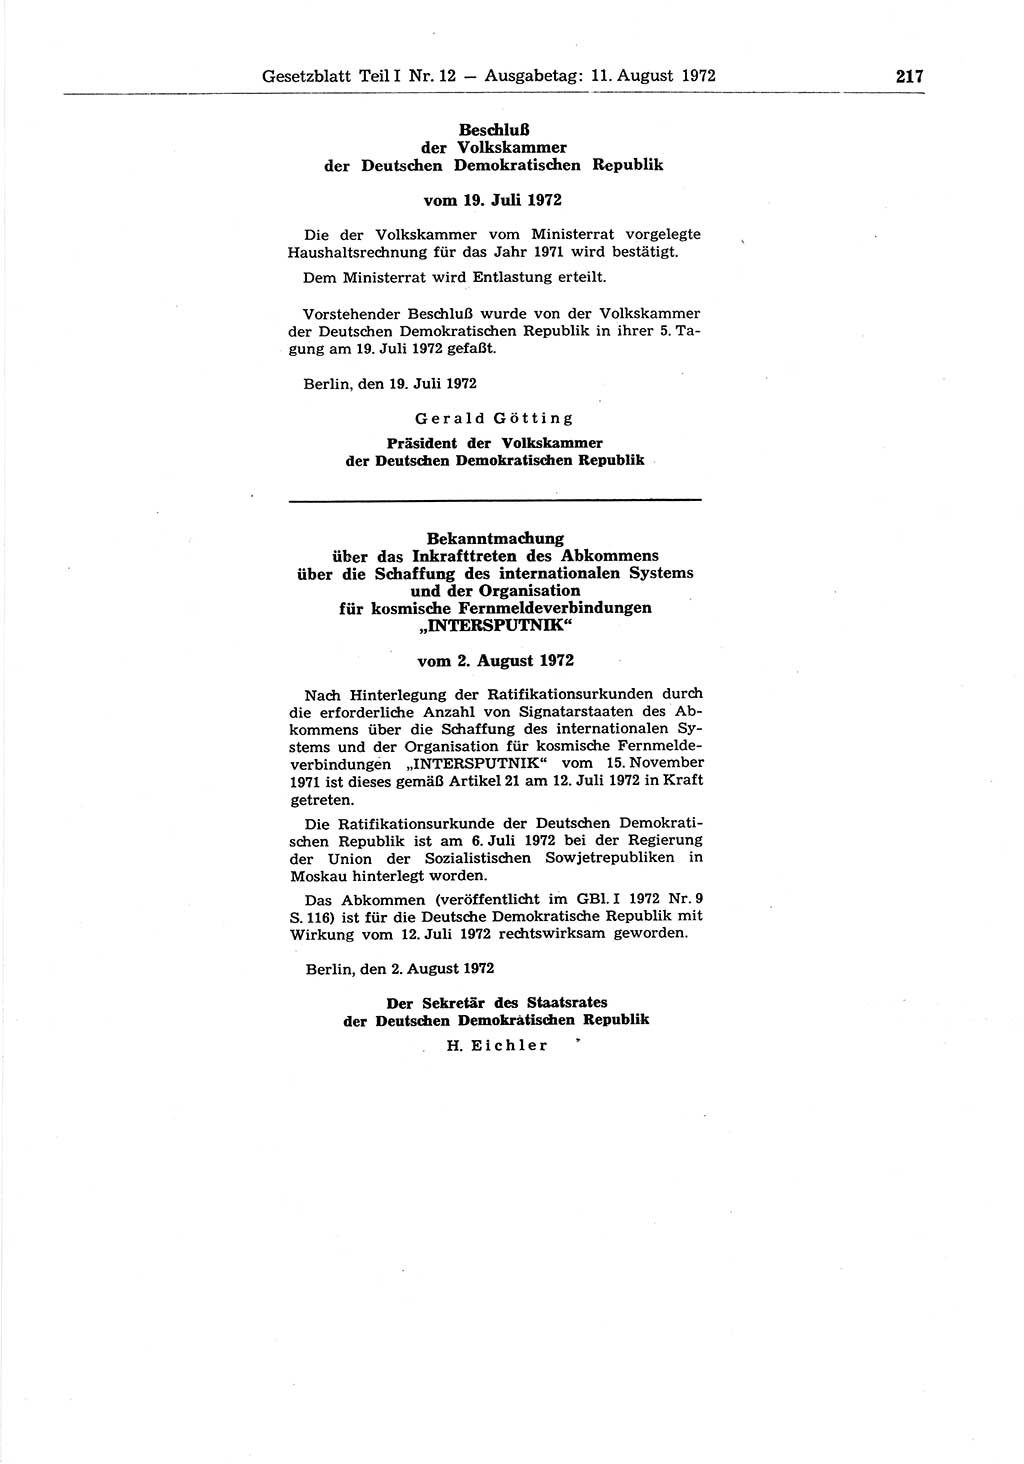 Gesetzblatt (GBl.) der Deutschen Demokratischen Republik (DDR) Teil Ⅰ 1972, Seite 217 (GBl. DDR Ⅰ 1972, S. 217)